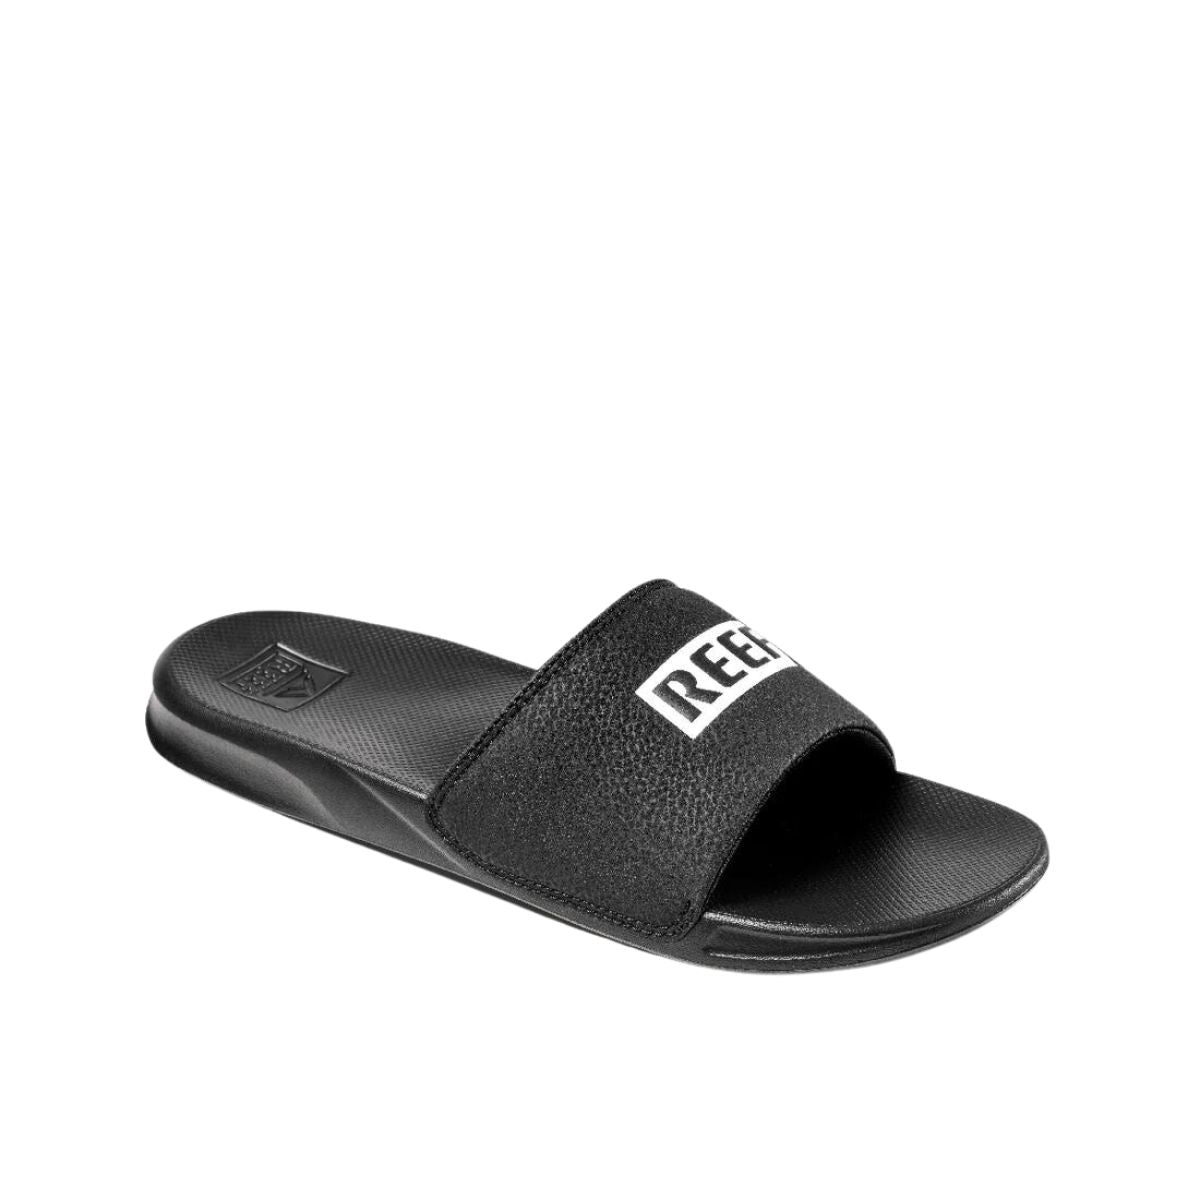 Reef One Slide Men's Sandal in Black/White - BoardCo